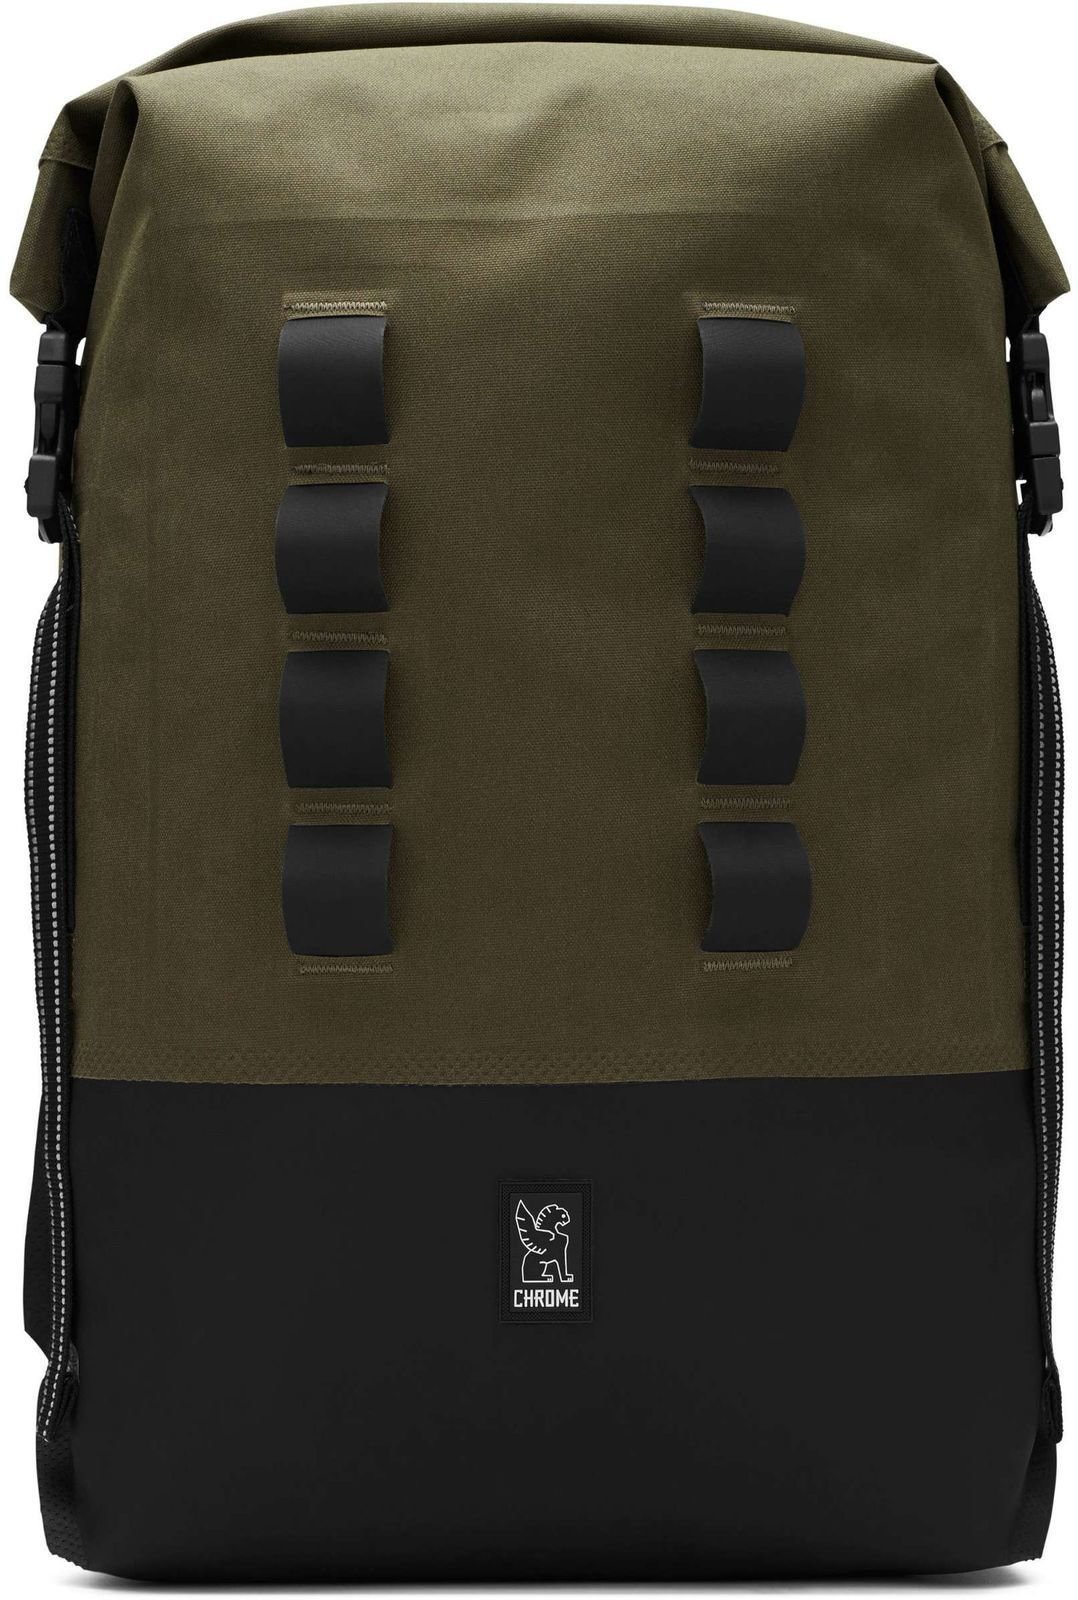 Lifestyle sac à dos / Sac Chrome Urban Ex Rolltop Ranger/Black 28 L Sac à dos